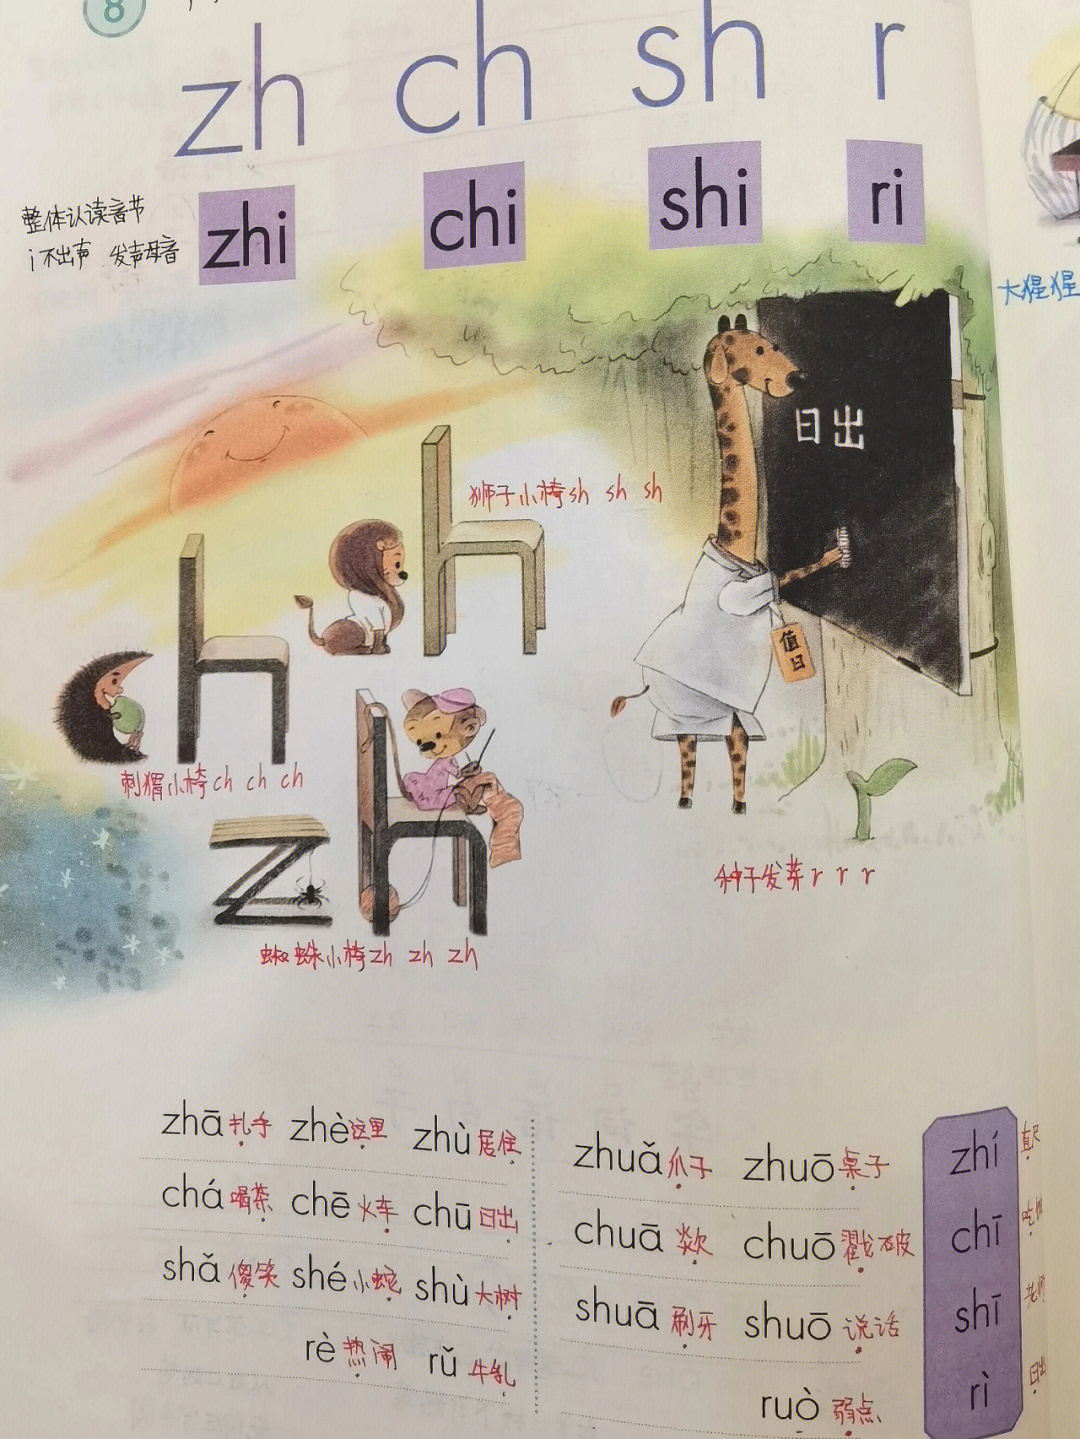 一年级语文汉语拼音zhichishiri